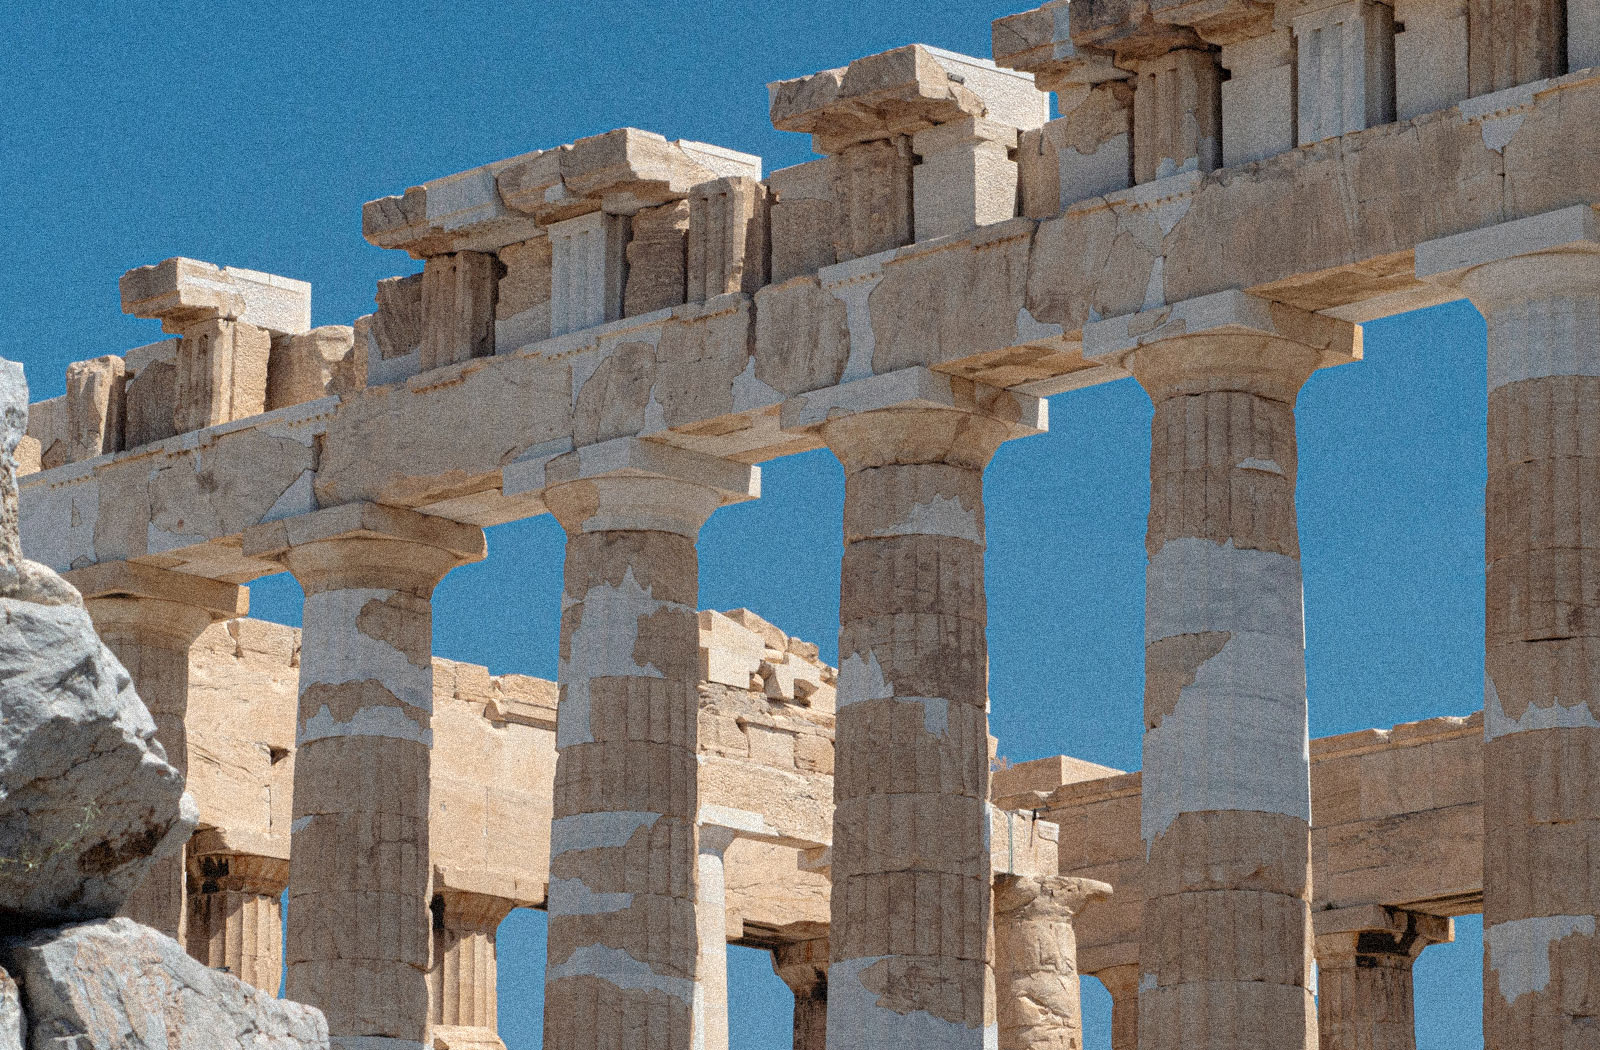 Teilweise restaurierte griechische Tempelruine an einem wolkenlosen Tag